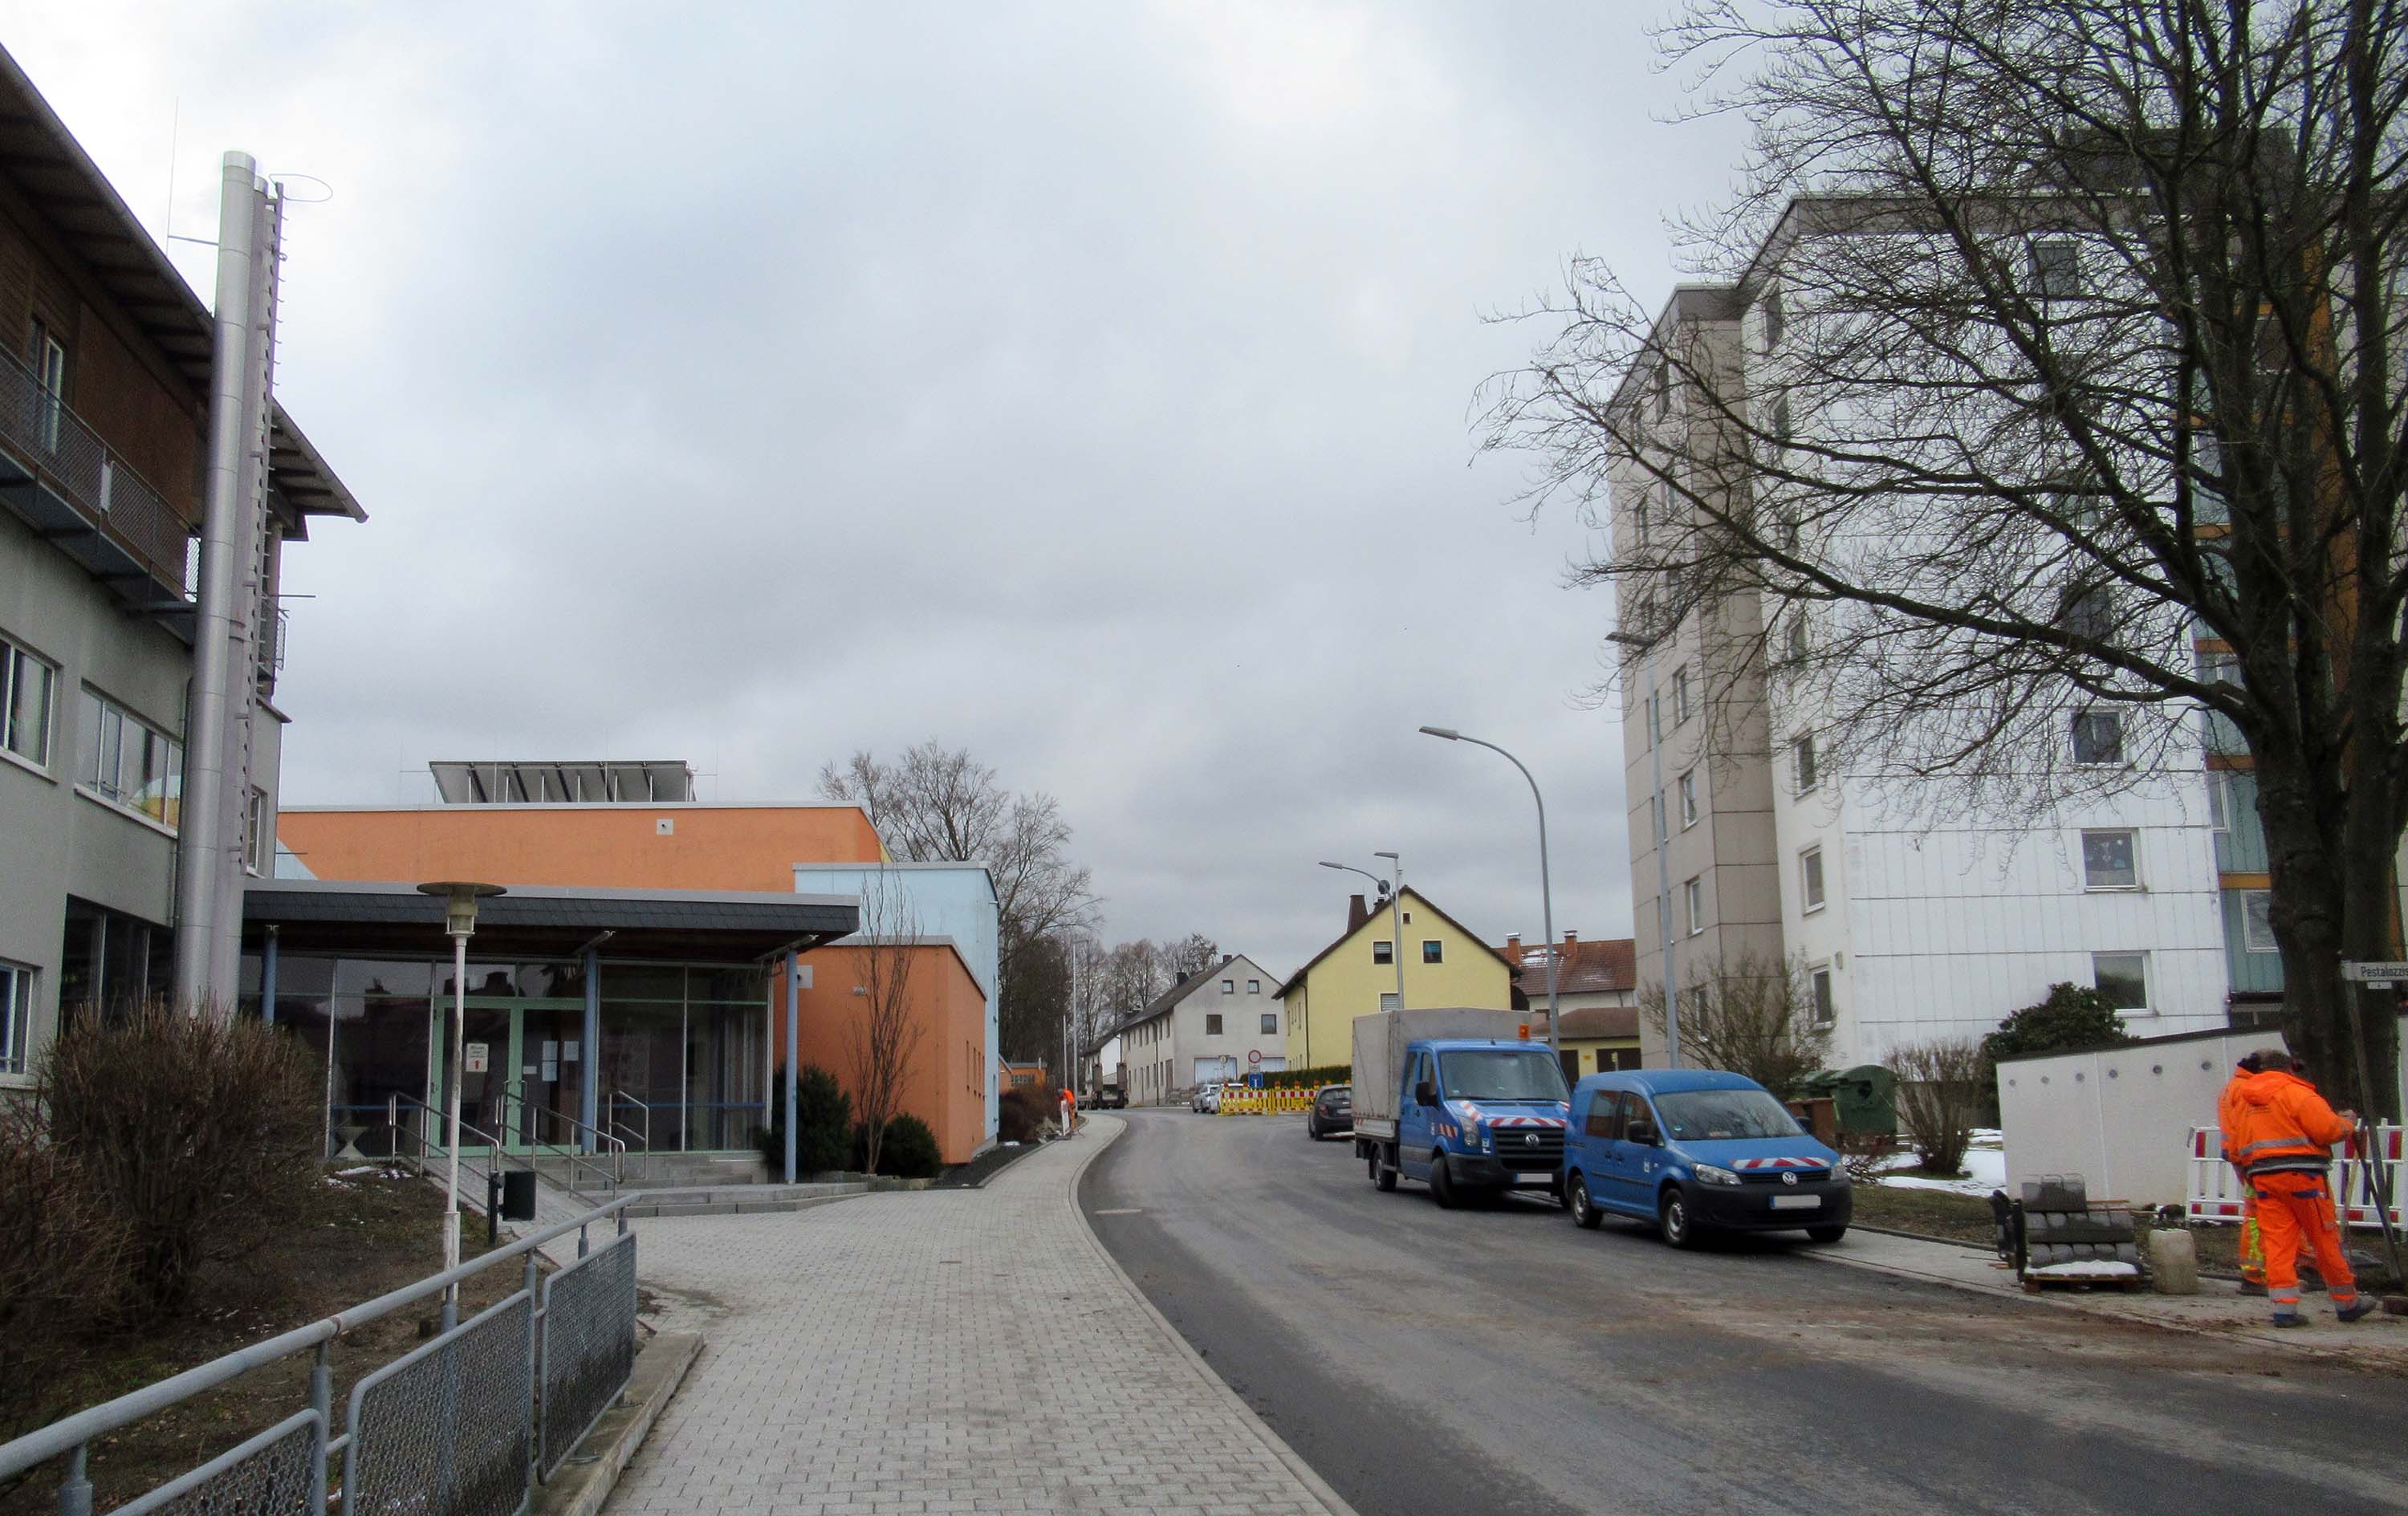 Ausbau der OD Schönwald - Schützenstraße nach Fertigstellung (Restarbeiten)